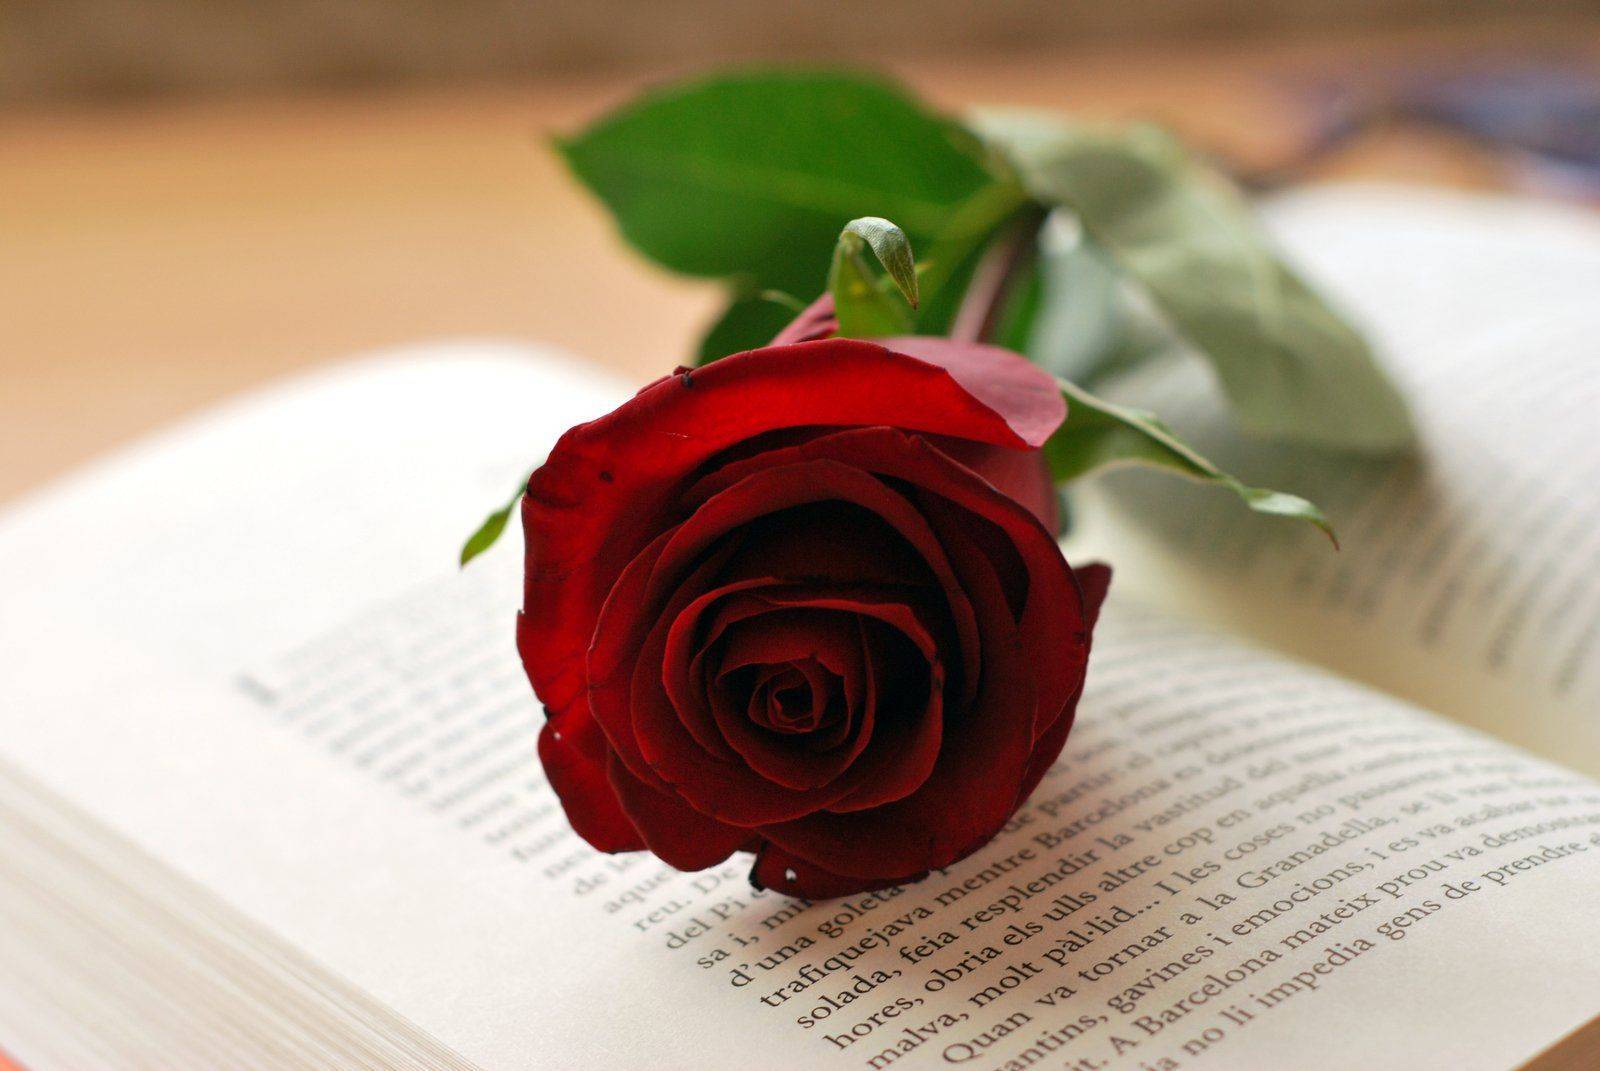 Rosa-i-llibre-Sant-Jordi-copia.jpg